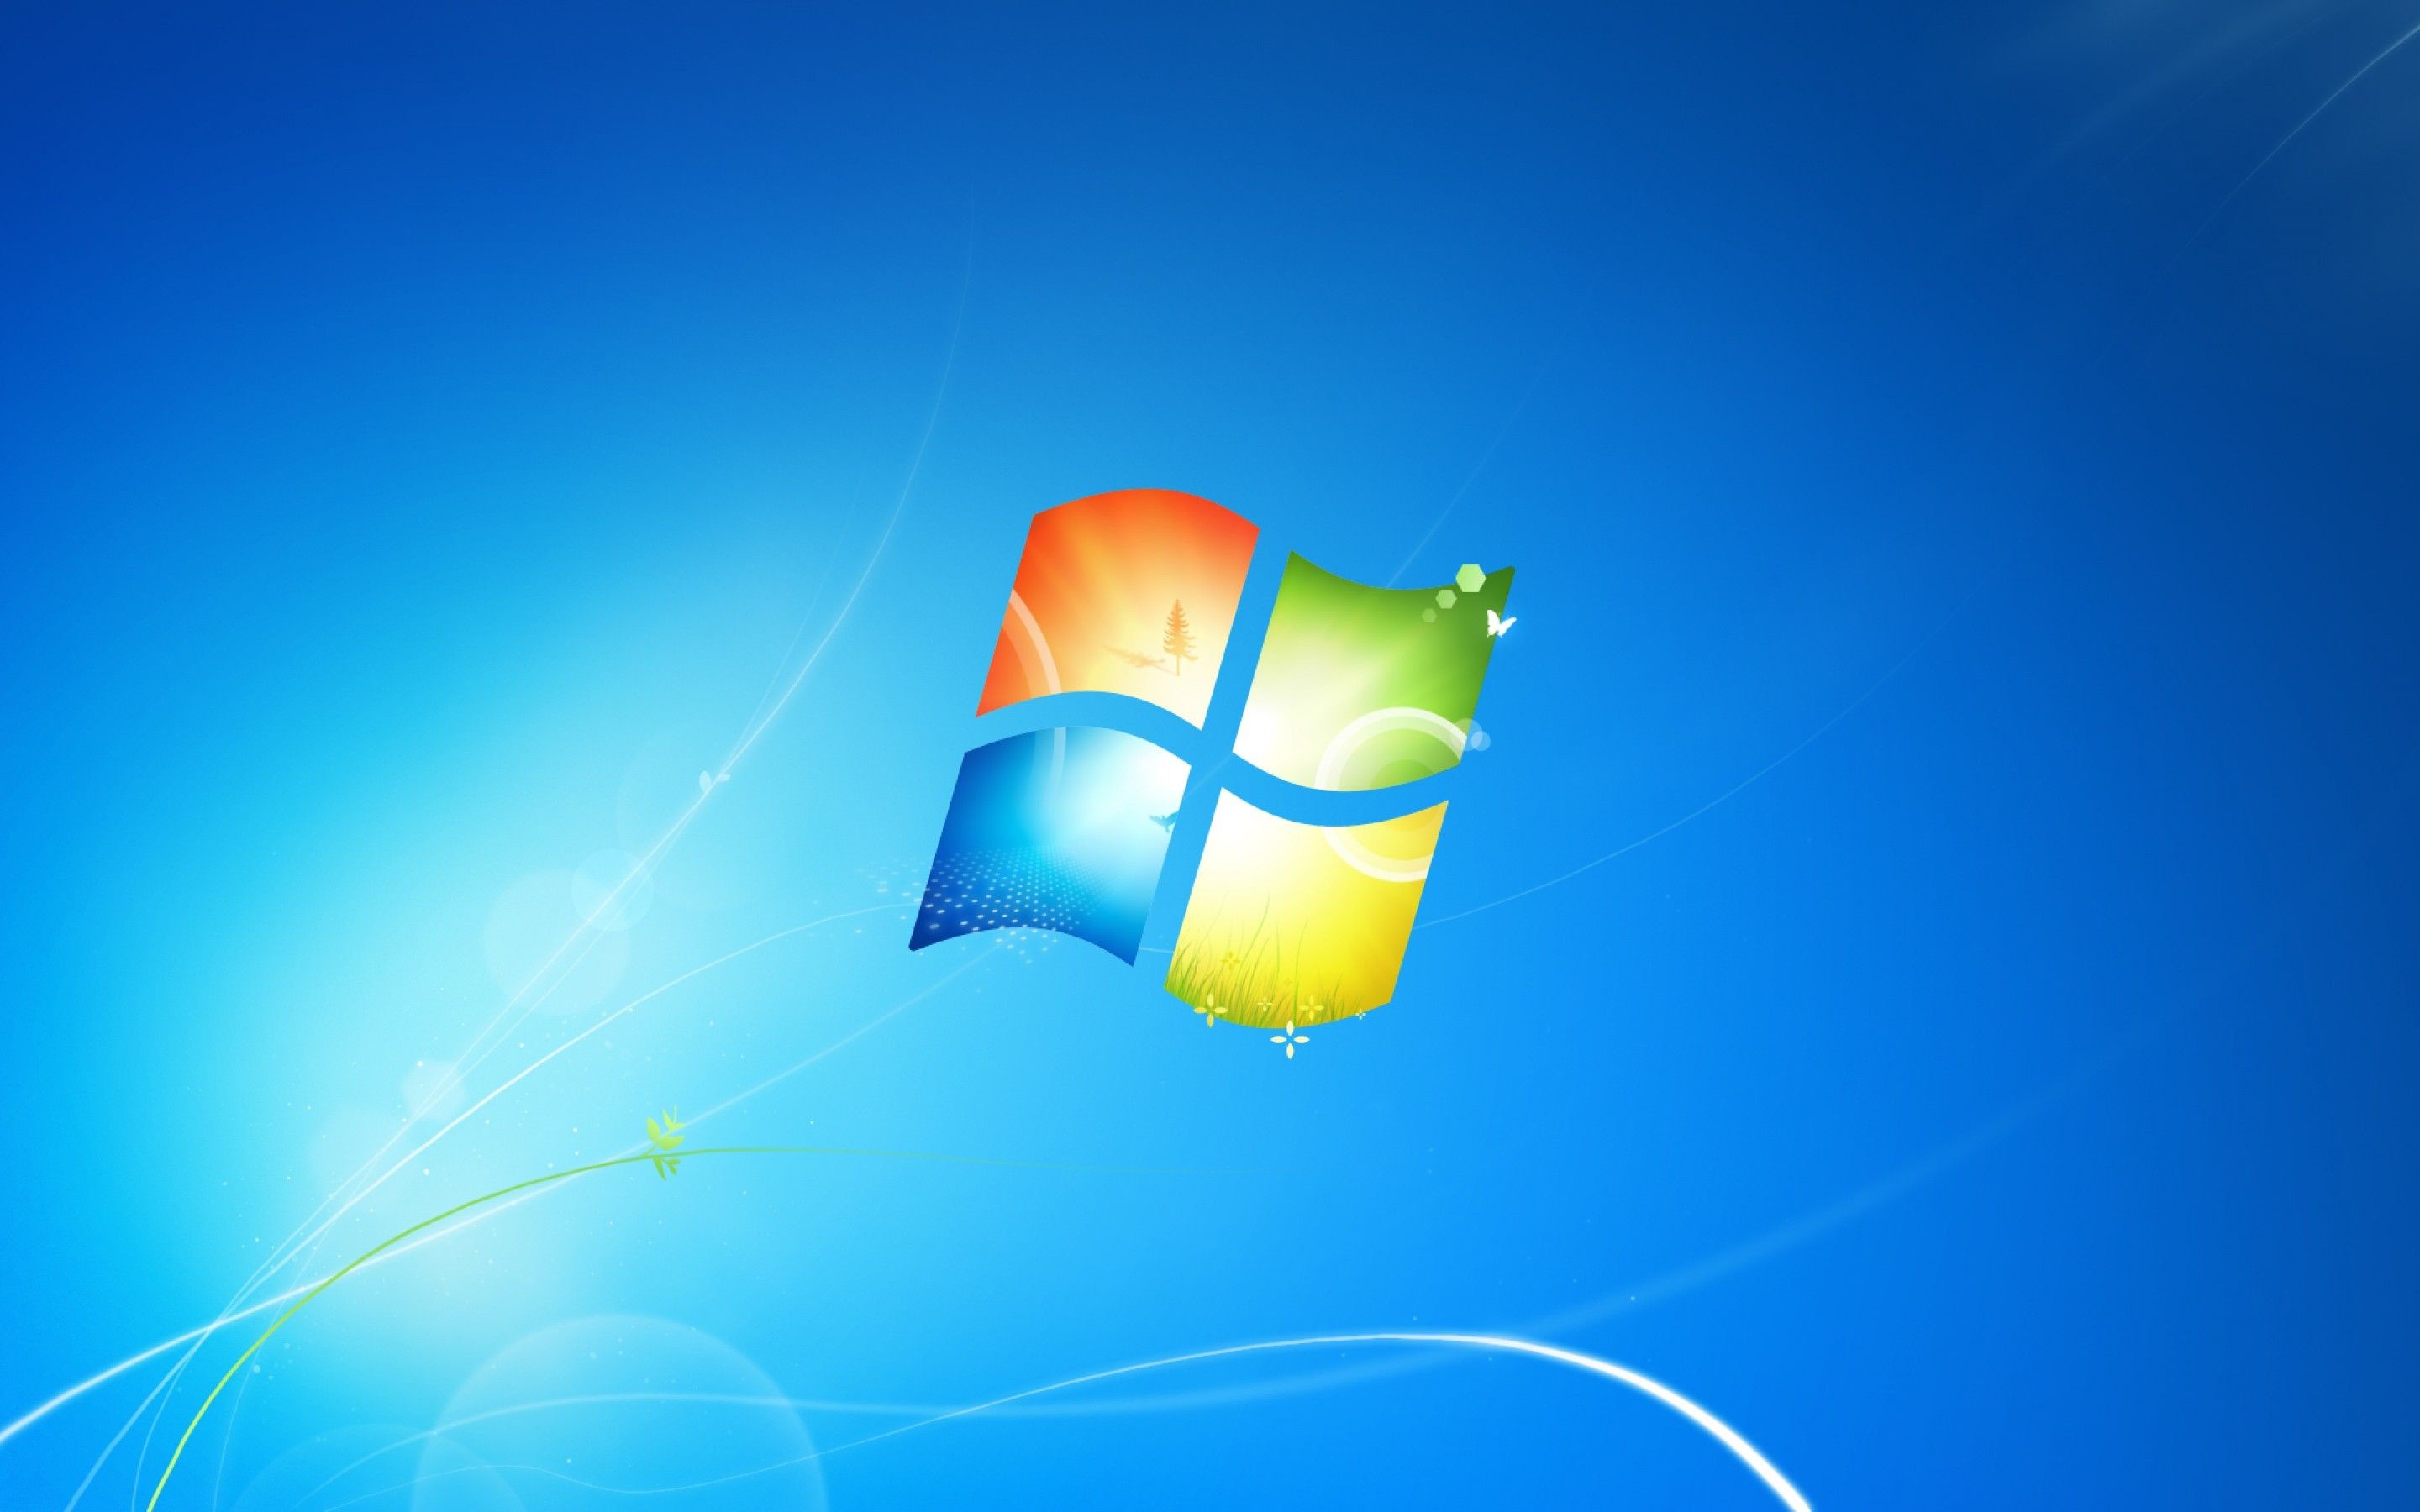 Hình nền desktop Microsoft 7 đẹp mắt: Dành cho những ai yêu thích những hình ảnh đẹp và sống động, hình nền desktop cho Microsoft 7 sẽ giúp bạn trải nghiệm cảm giác mới mẻ cho không gian làm việc của mình. Khám phá những họa tiết đẹp mắt và đầy sức cuốn hút ngay thôi nào!